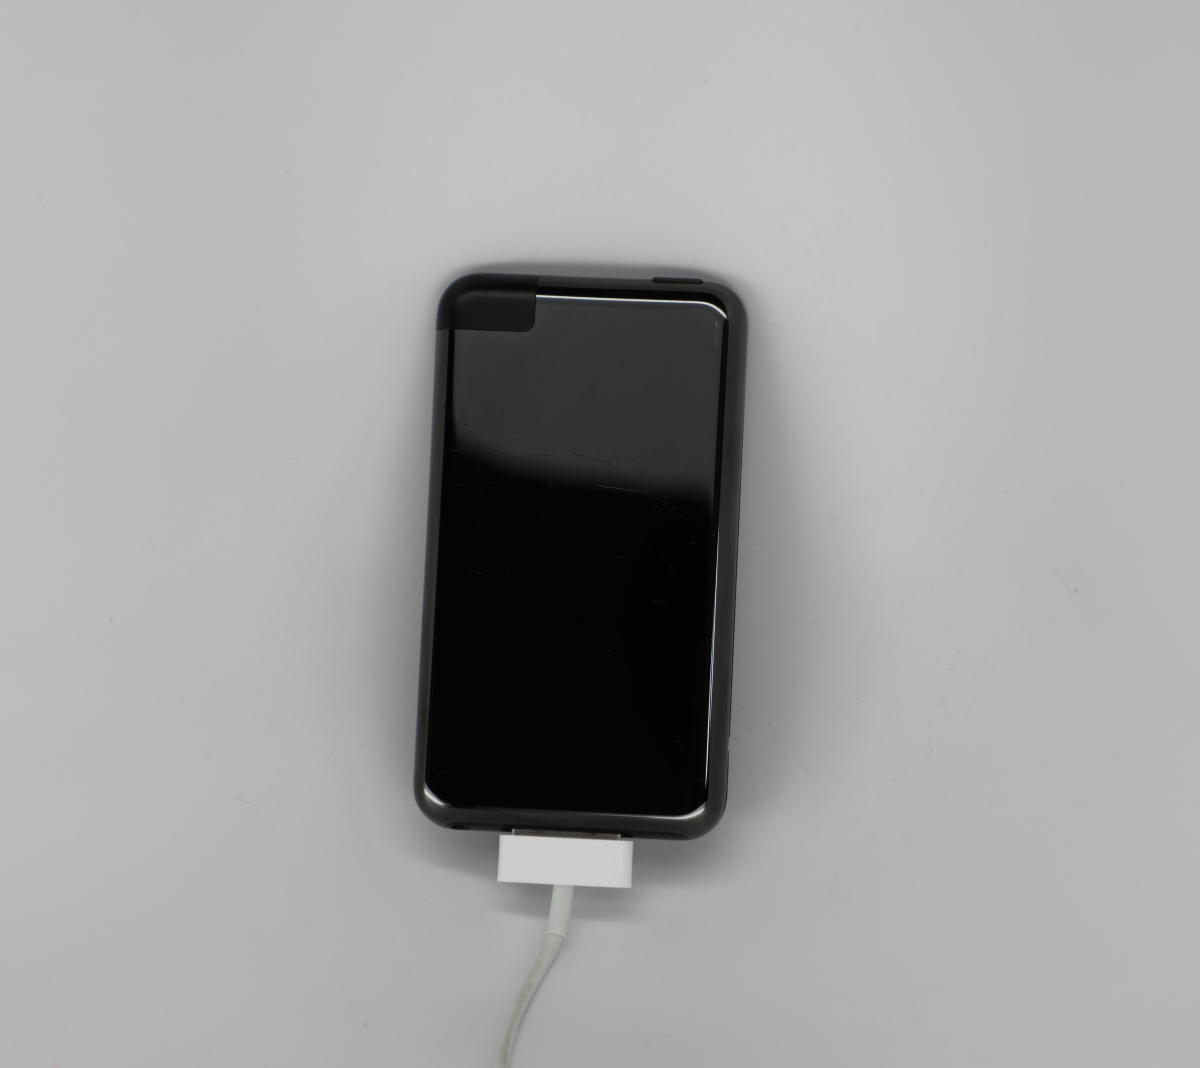 未上市的第一代 iPod Touch 原型机曝光